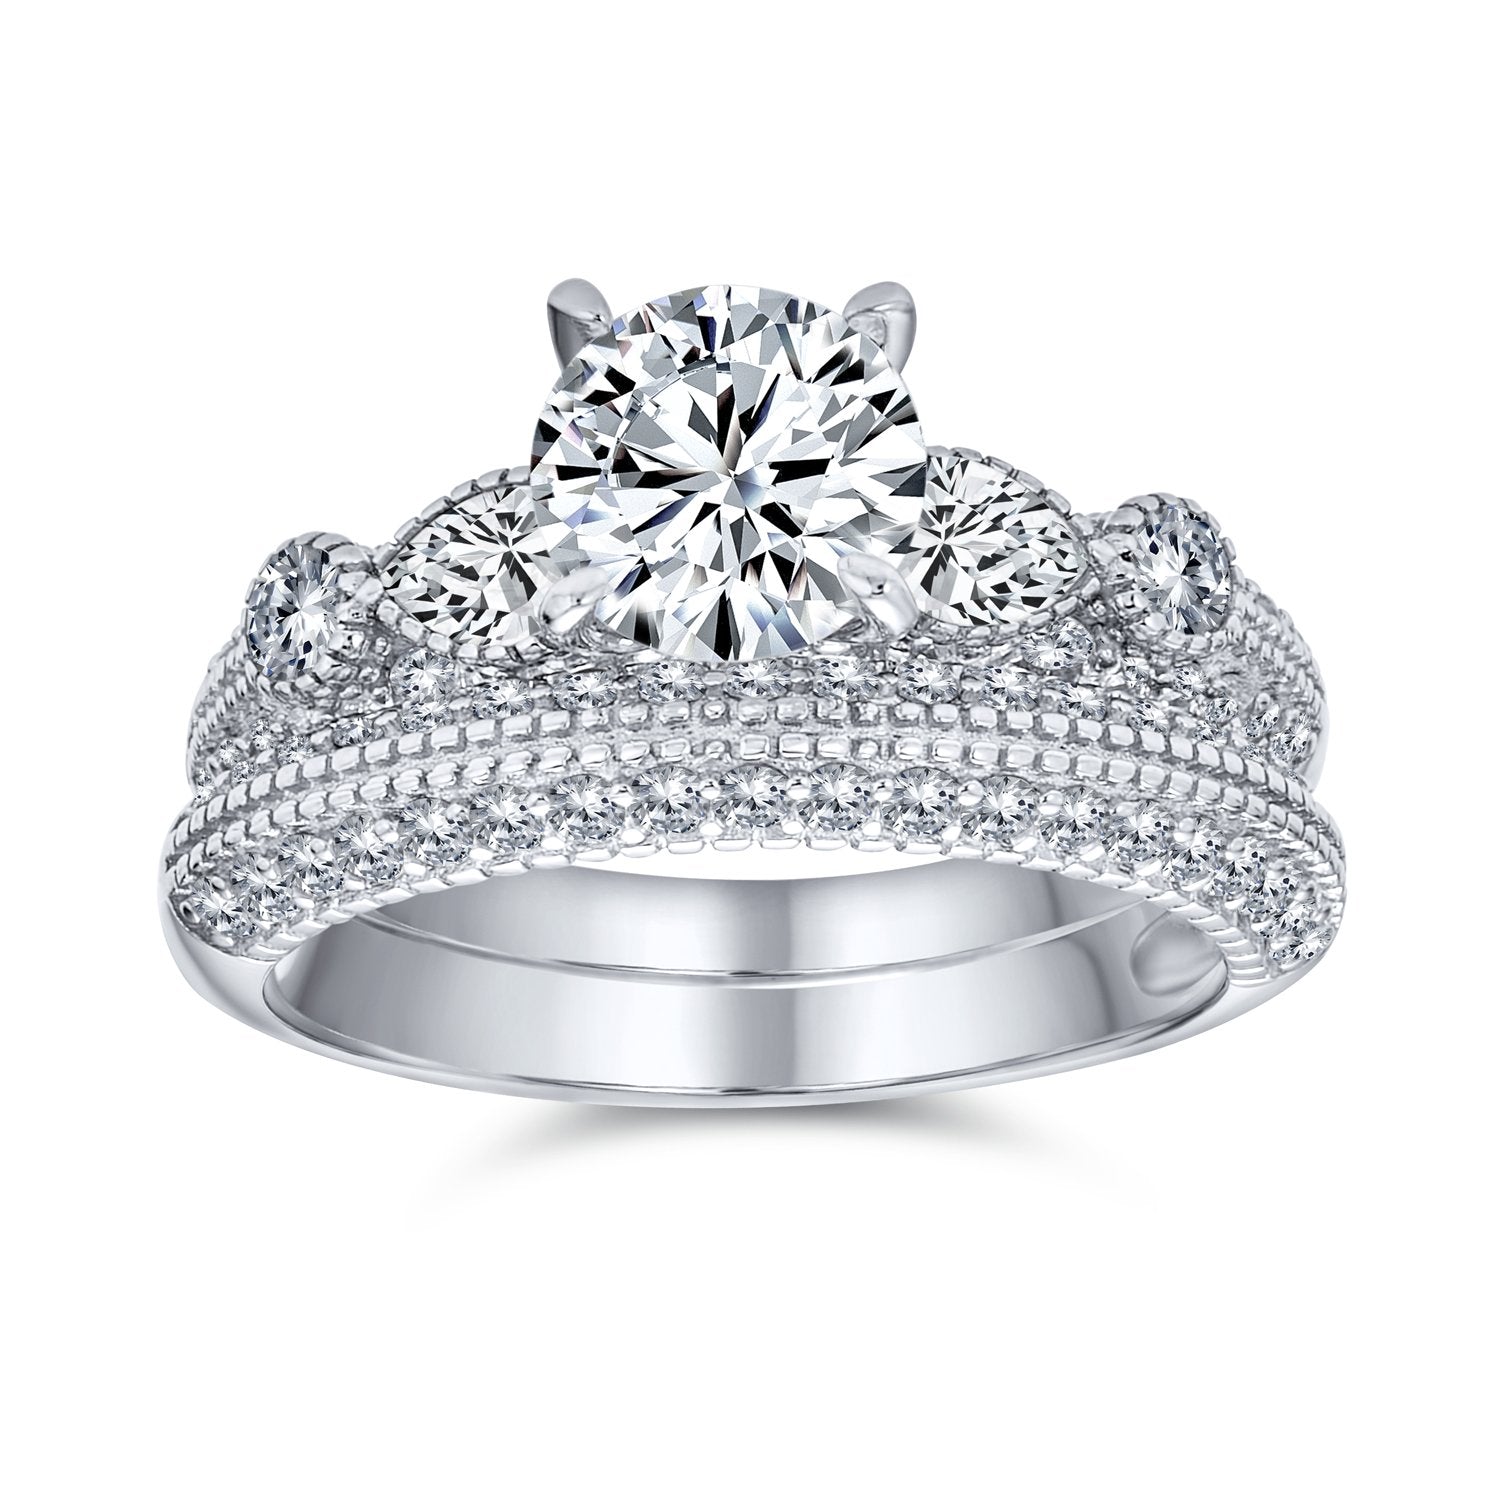 Conjuntos de anillos compromiso de plata - Joyeria Lady